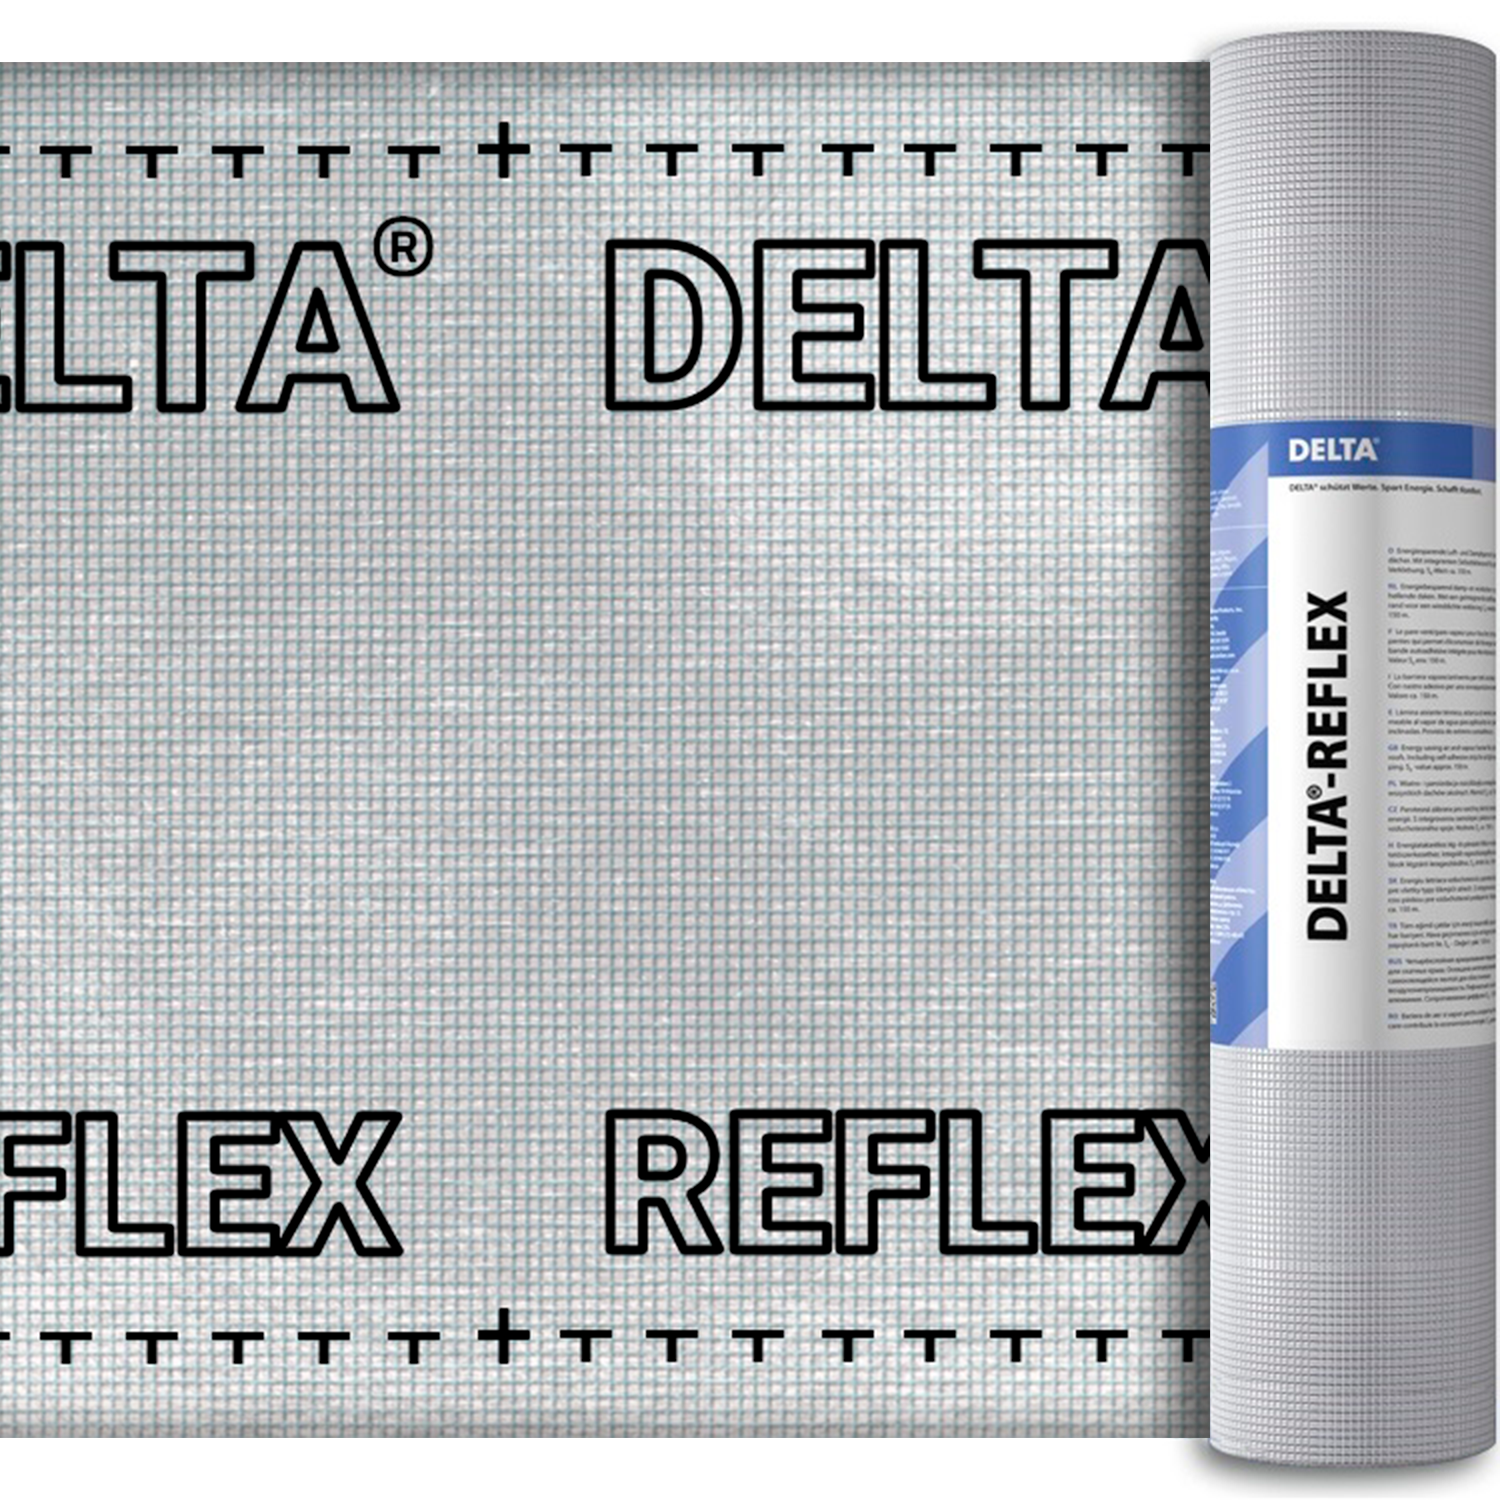 DELTA-REFLEX пароизоляционная плёнка с алюминиевым рефлексным слоем (Дельта Рефлекс)